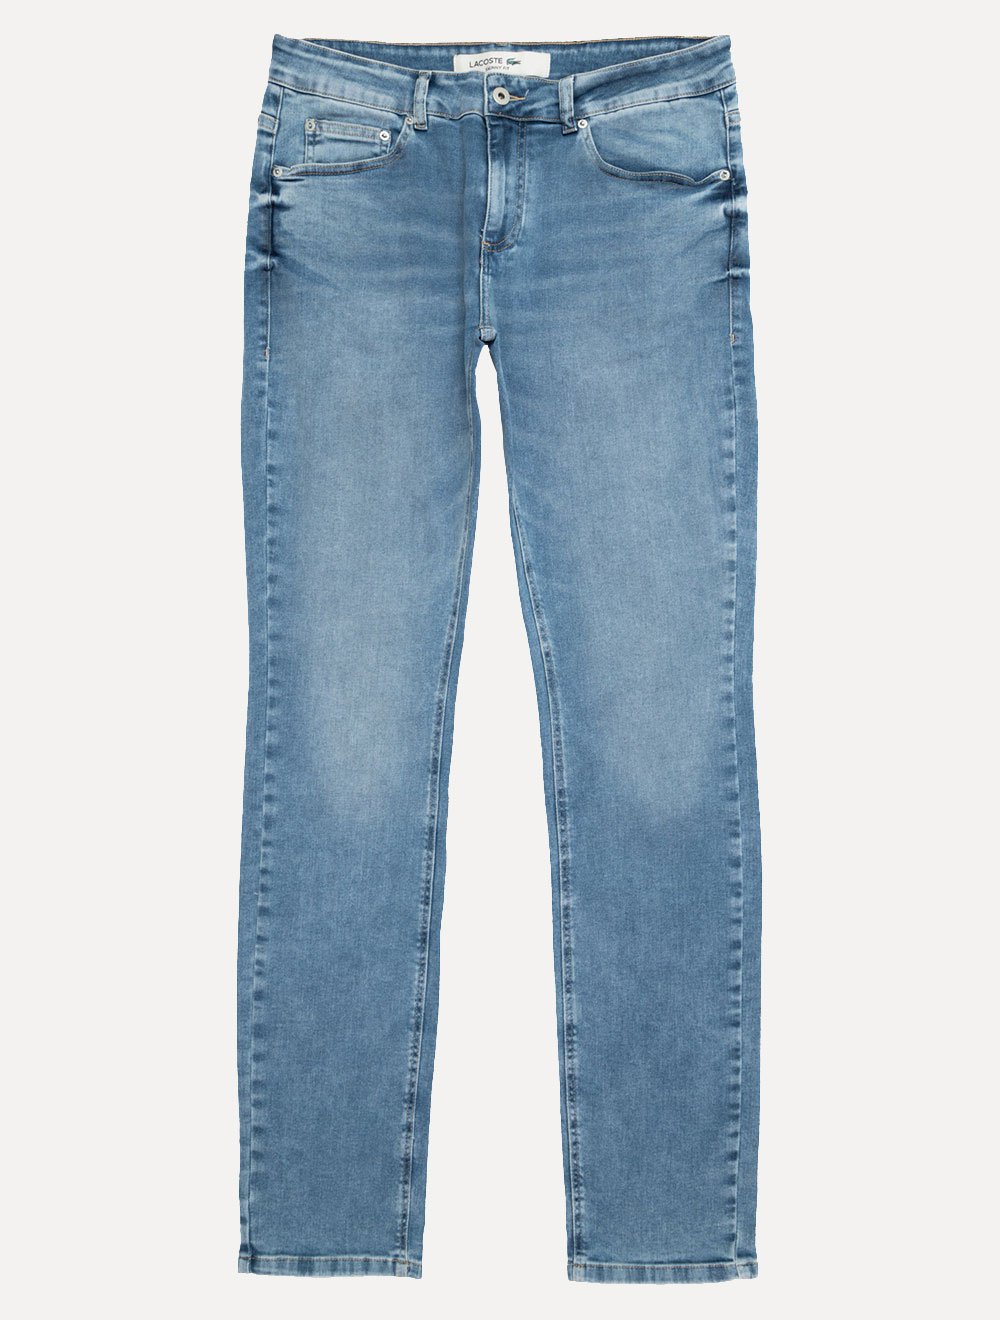 Calça Lacoste Jeans Masculina Skinny Fit Core Essentials Clara